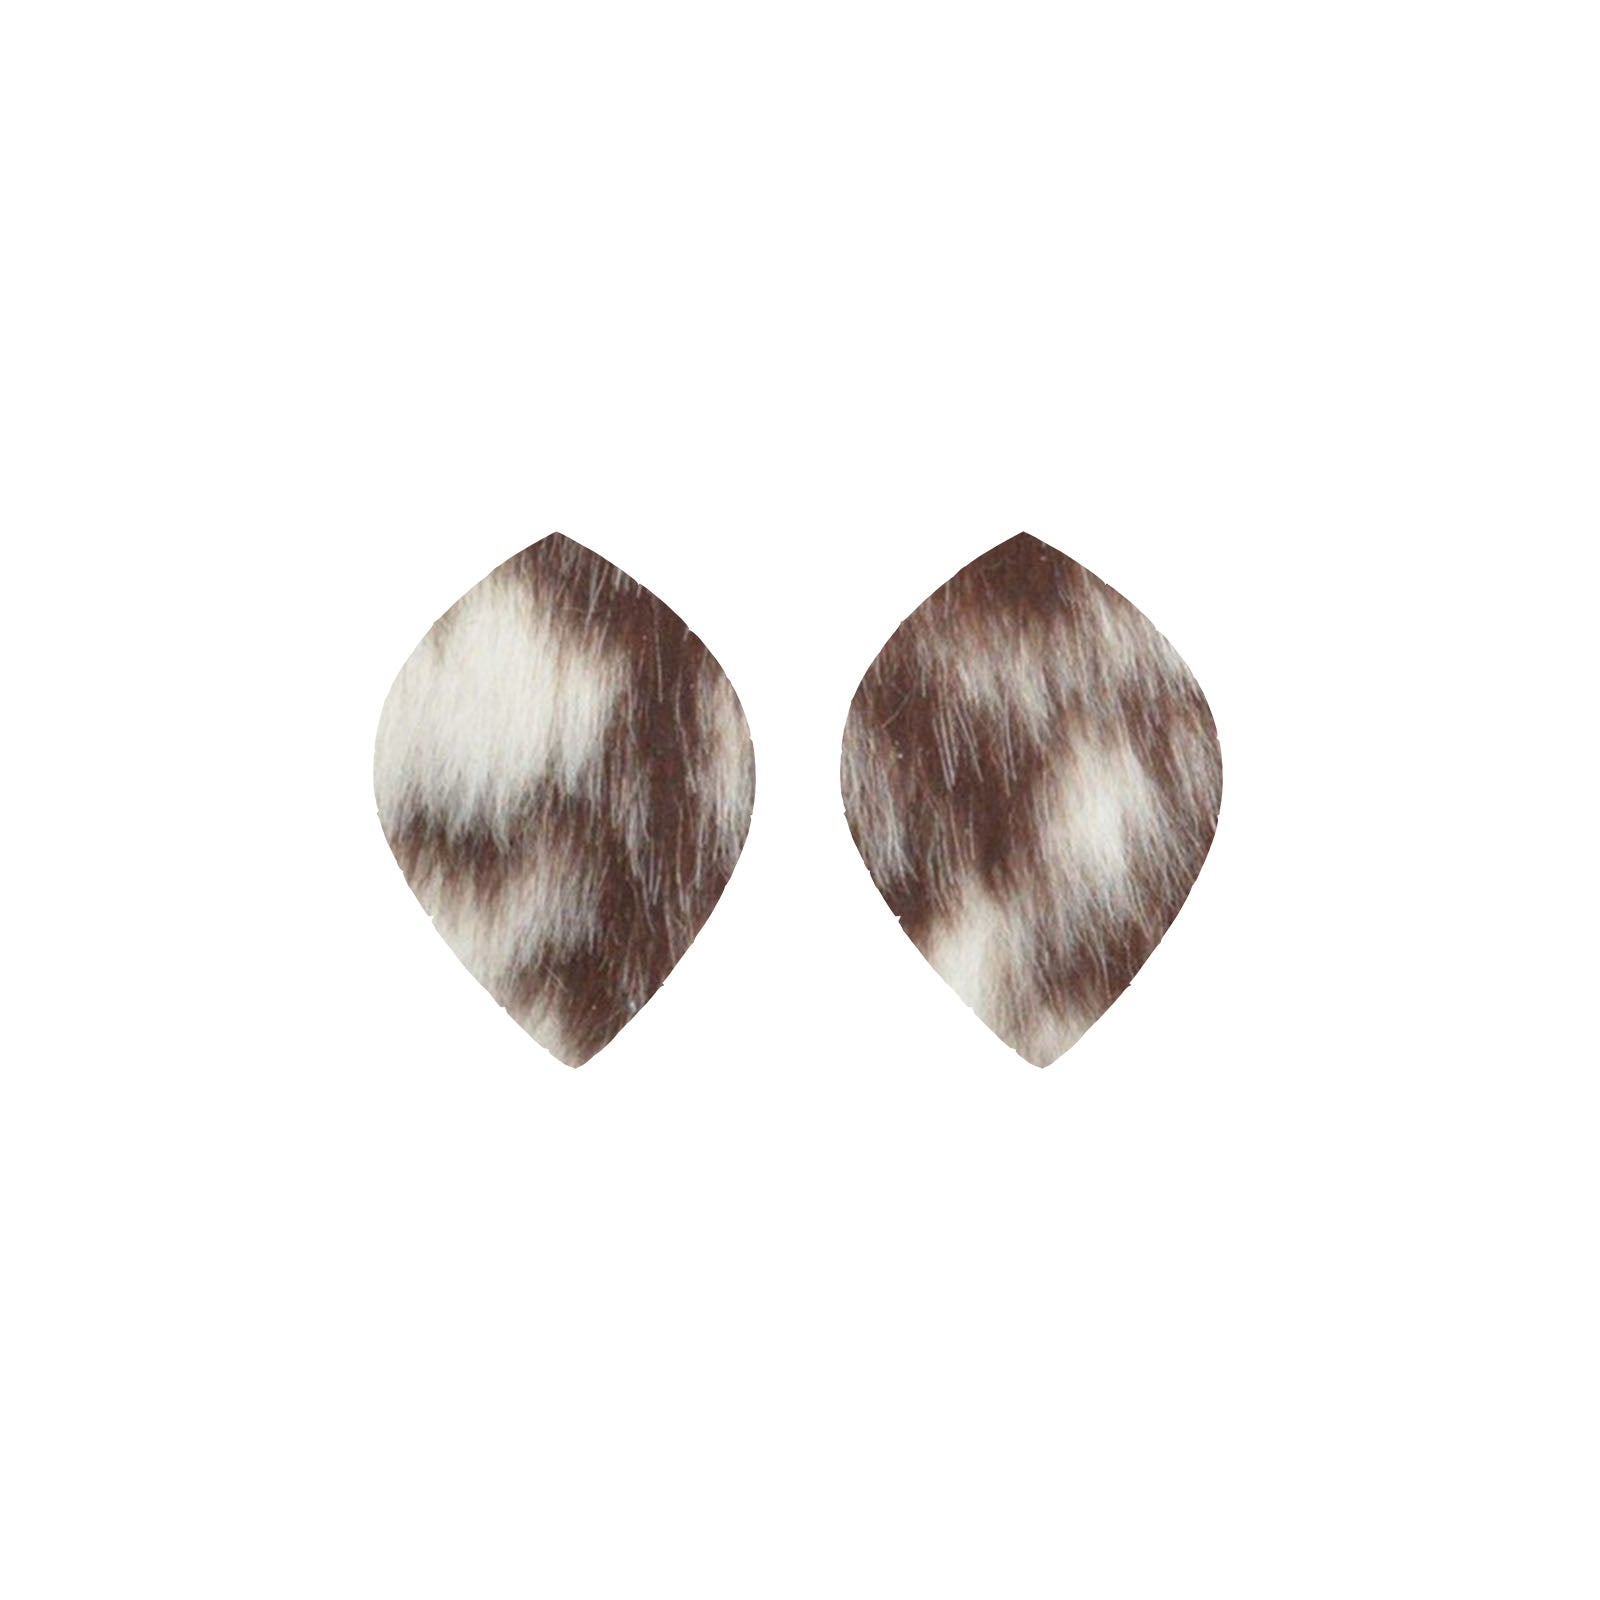 Bi-Color Medium Brown and Off-White Hair On Die Cut Earrings, Medium Leaf | The Leather Guy